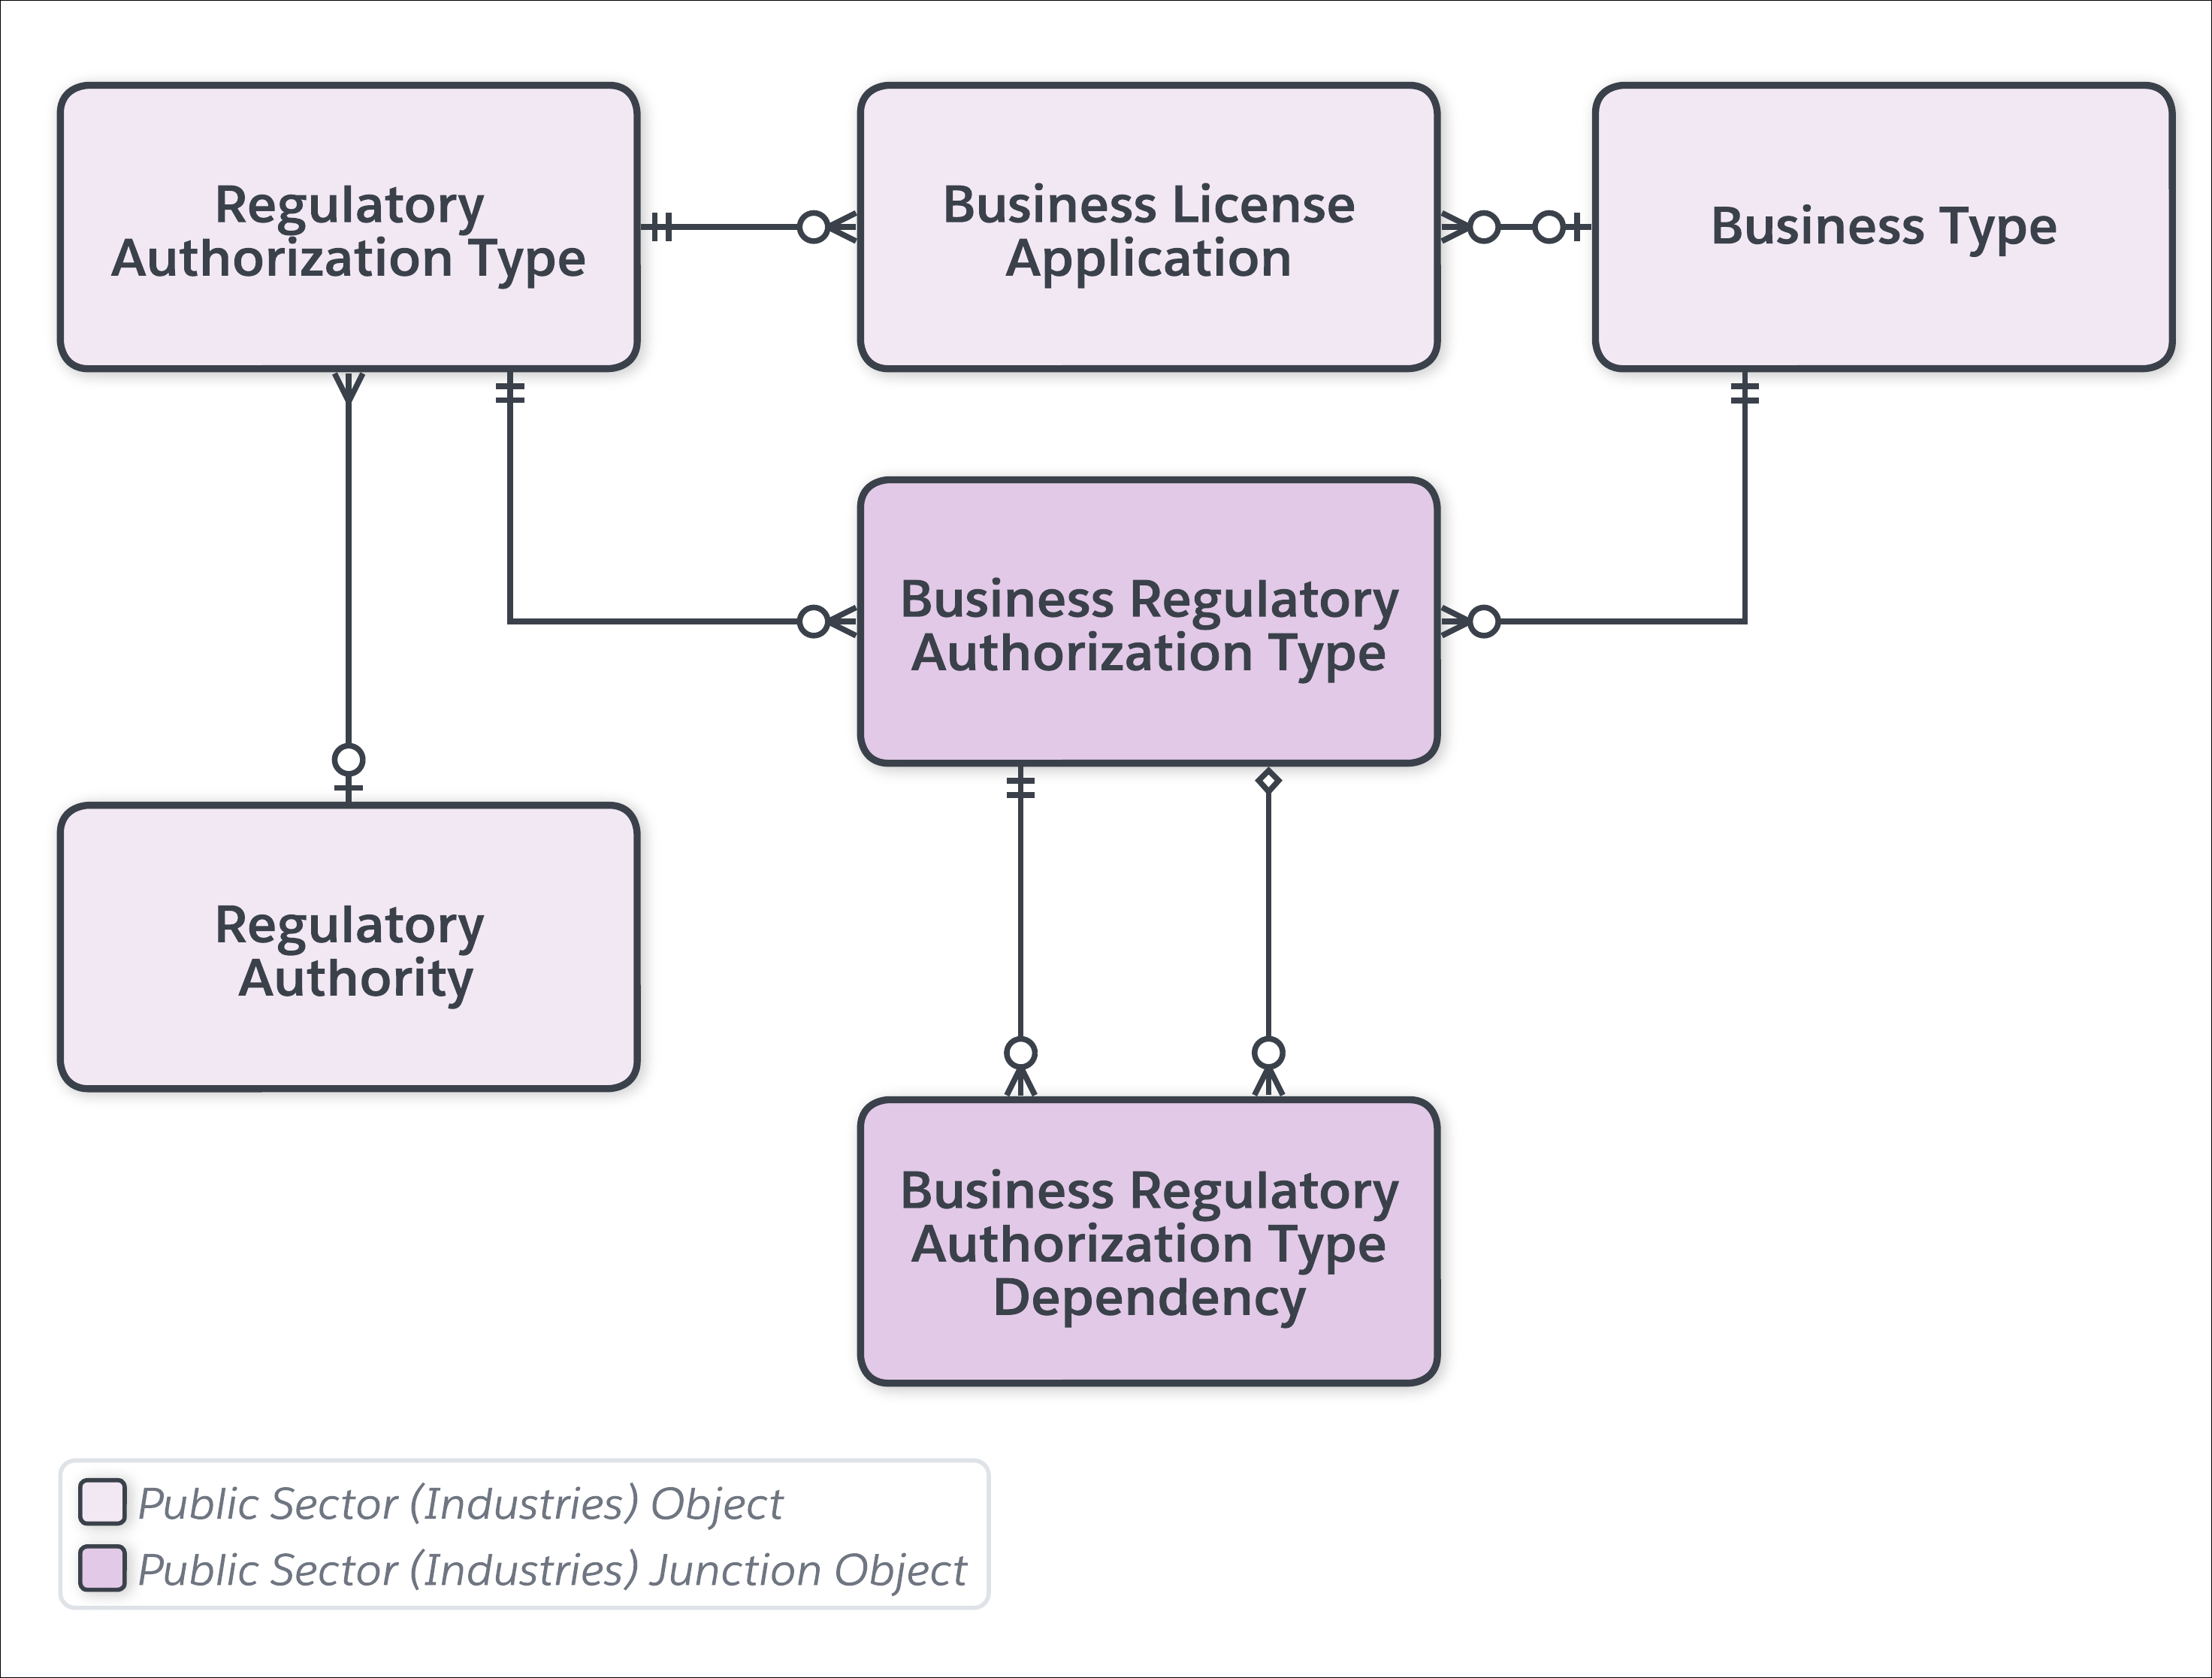 ビジネス規制認可種別連動関係データモデル。